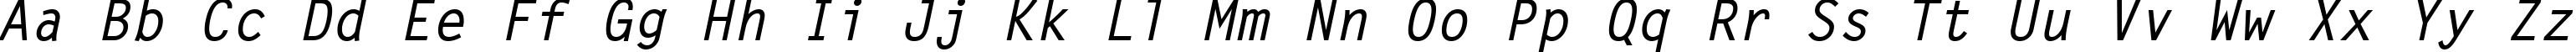 Пример написания английского алфавита шрифтом Letter Gothic MT Bold Oblique